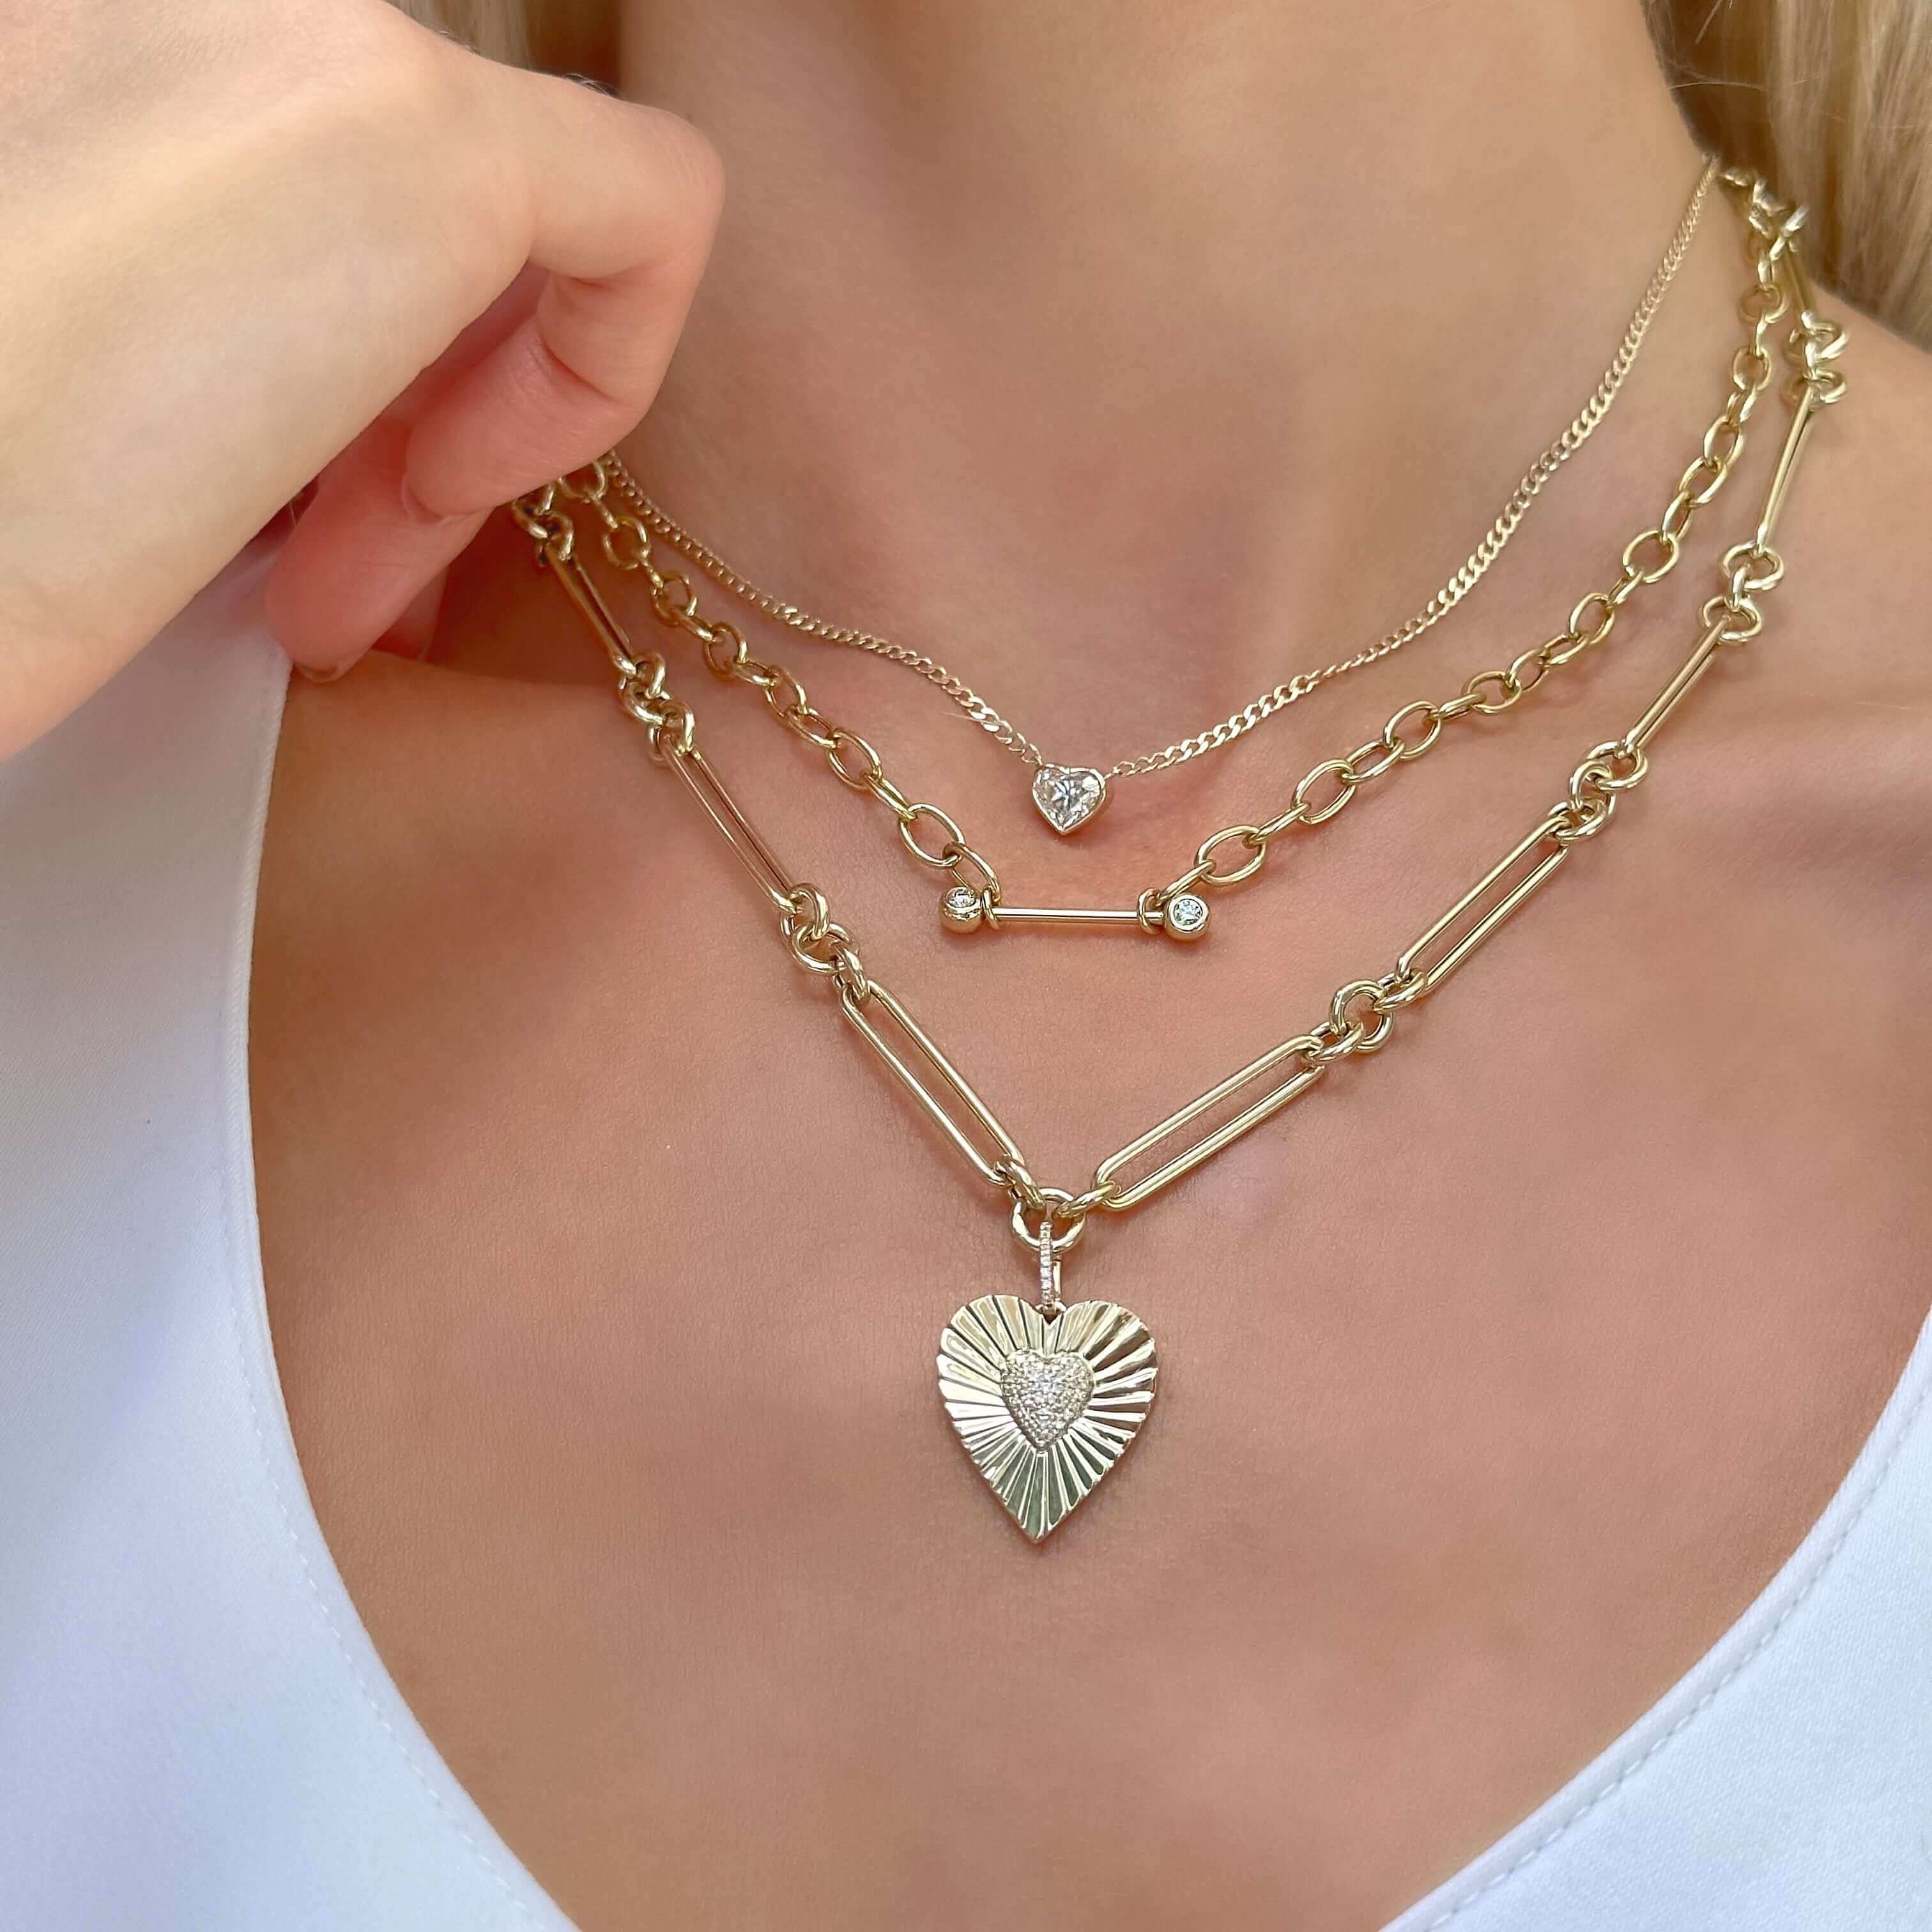 14K Gold Floating Bezel Heart Shaped Diamond Necklace - Necklaces - Izakov Diamonds + Fine Jewelry